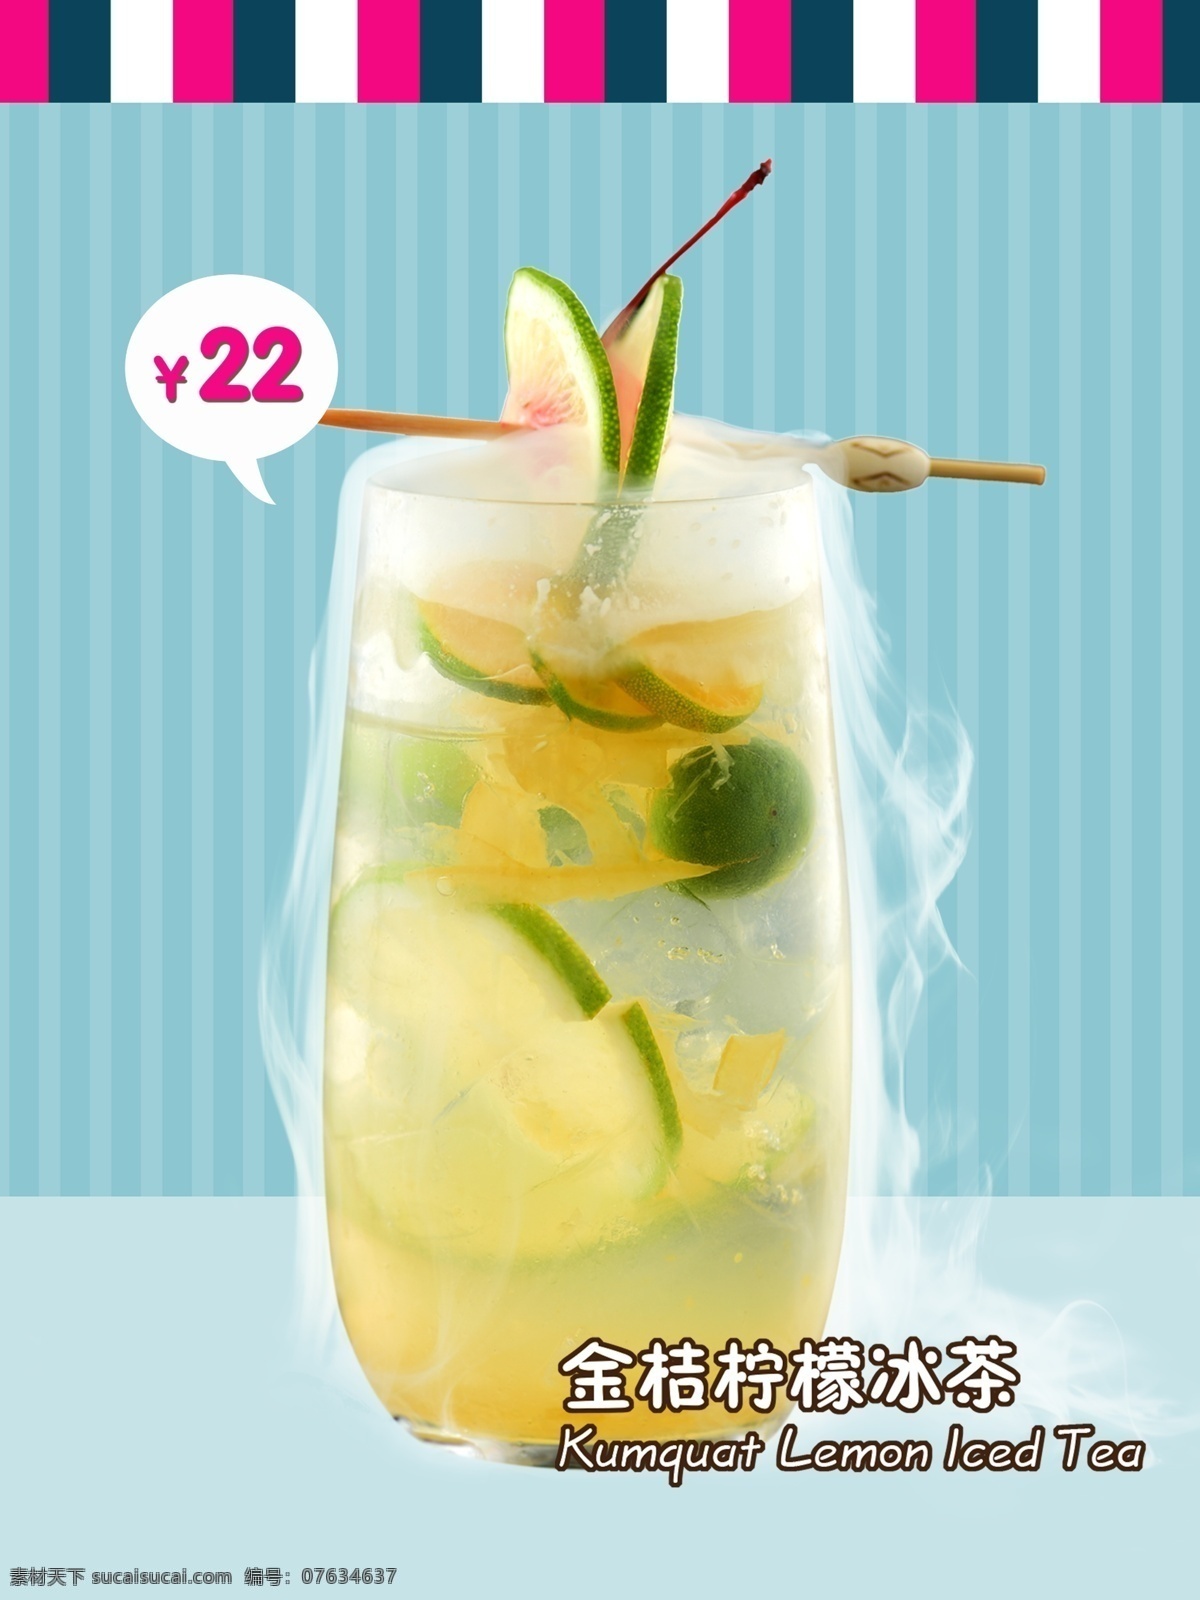 金桔 柠檬 冰茶 促销 海报 金桔柠檬冰茶 饮品 冰饮